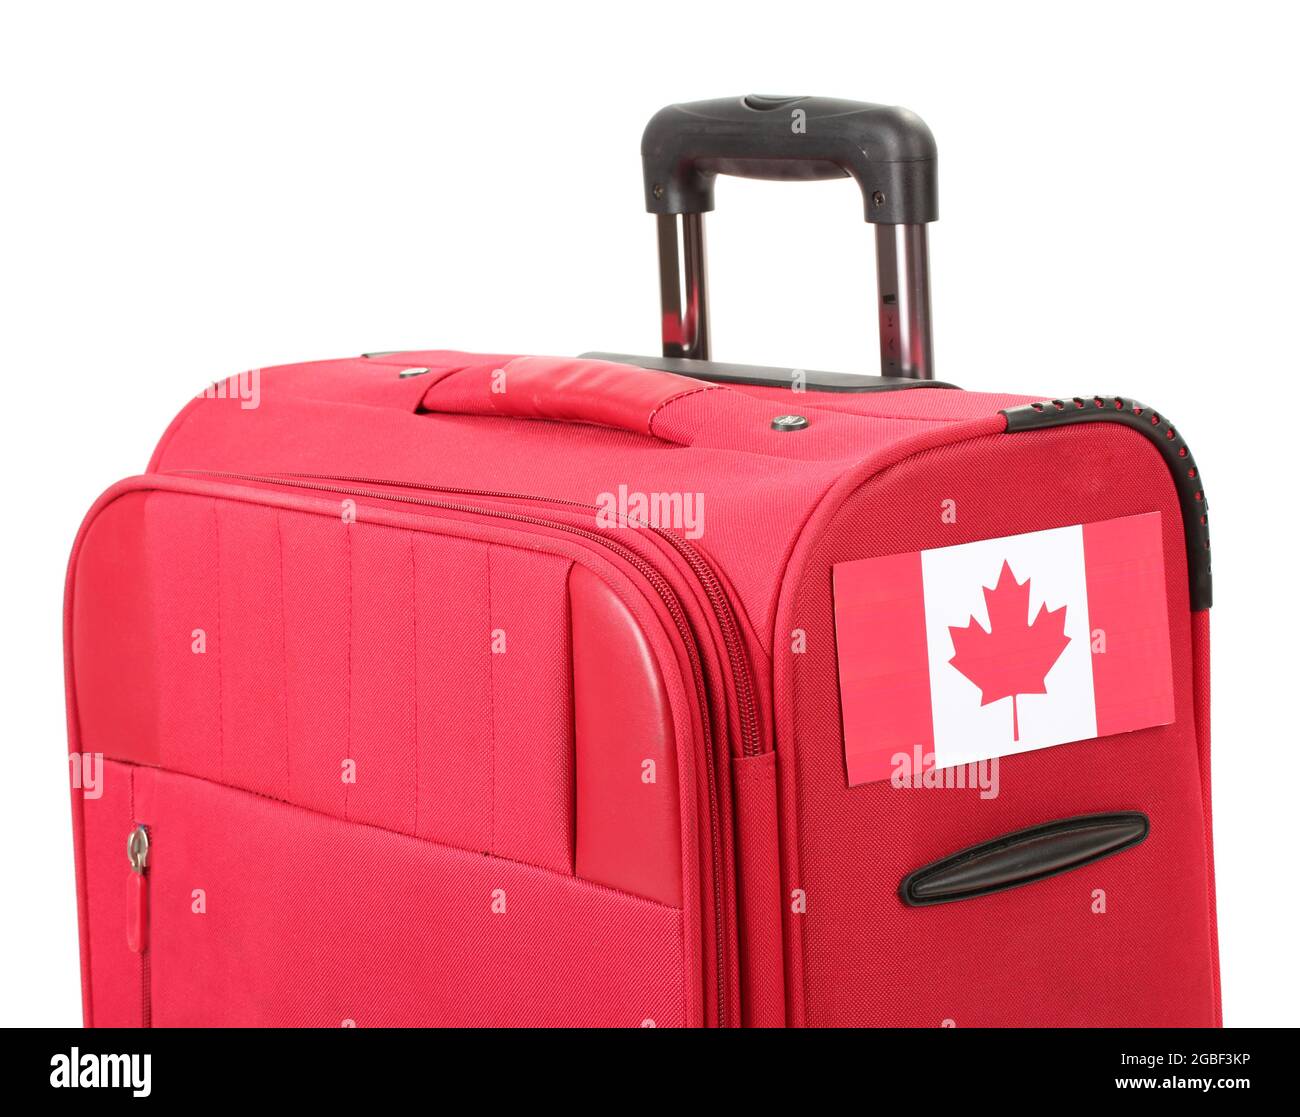 Roter Koffer mit Aufkleber mit Flagge von Kanada isoliert auf weiß  Stockfotografie - Alamy